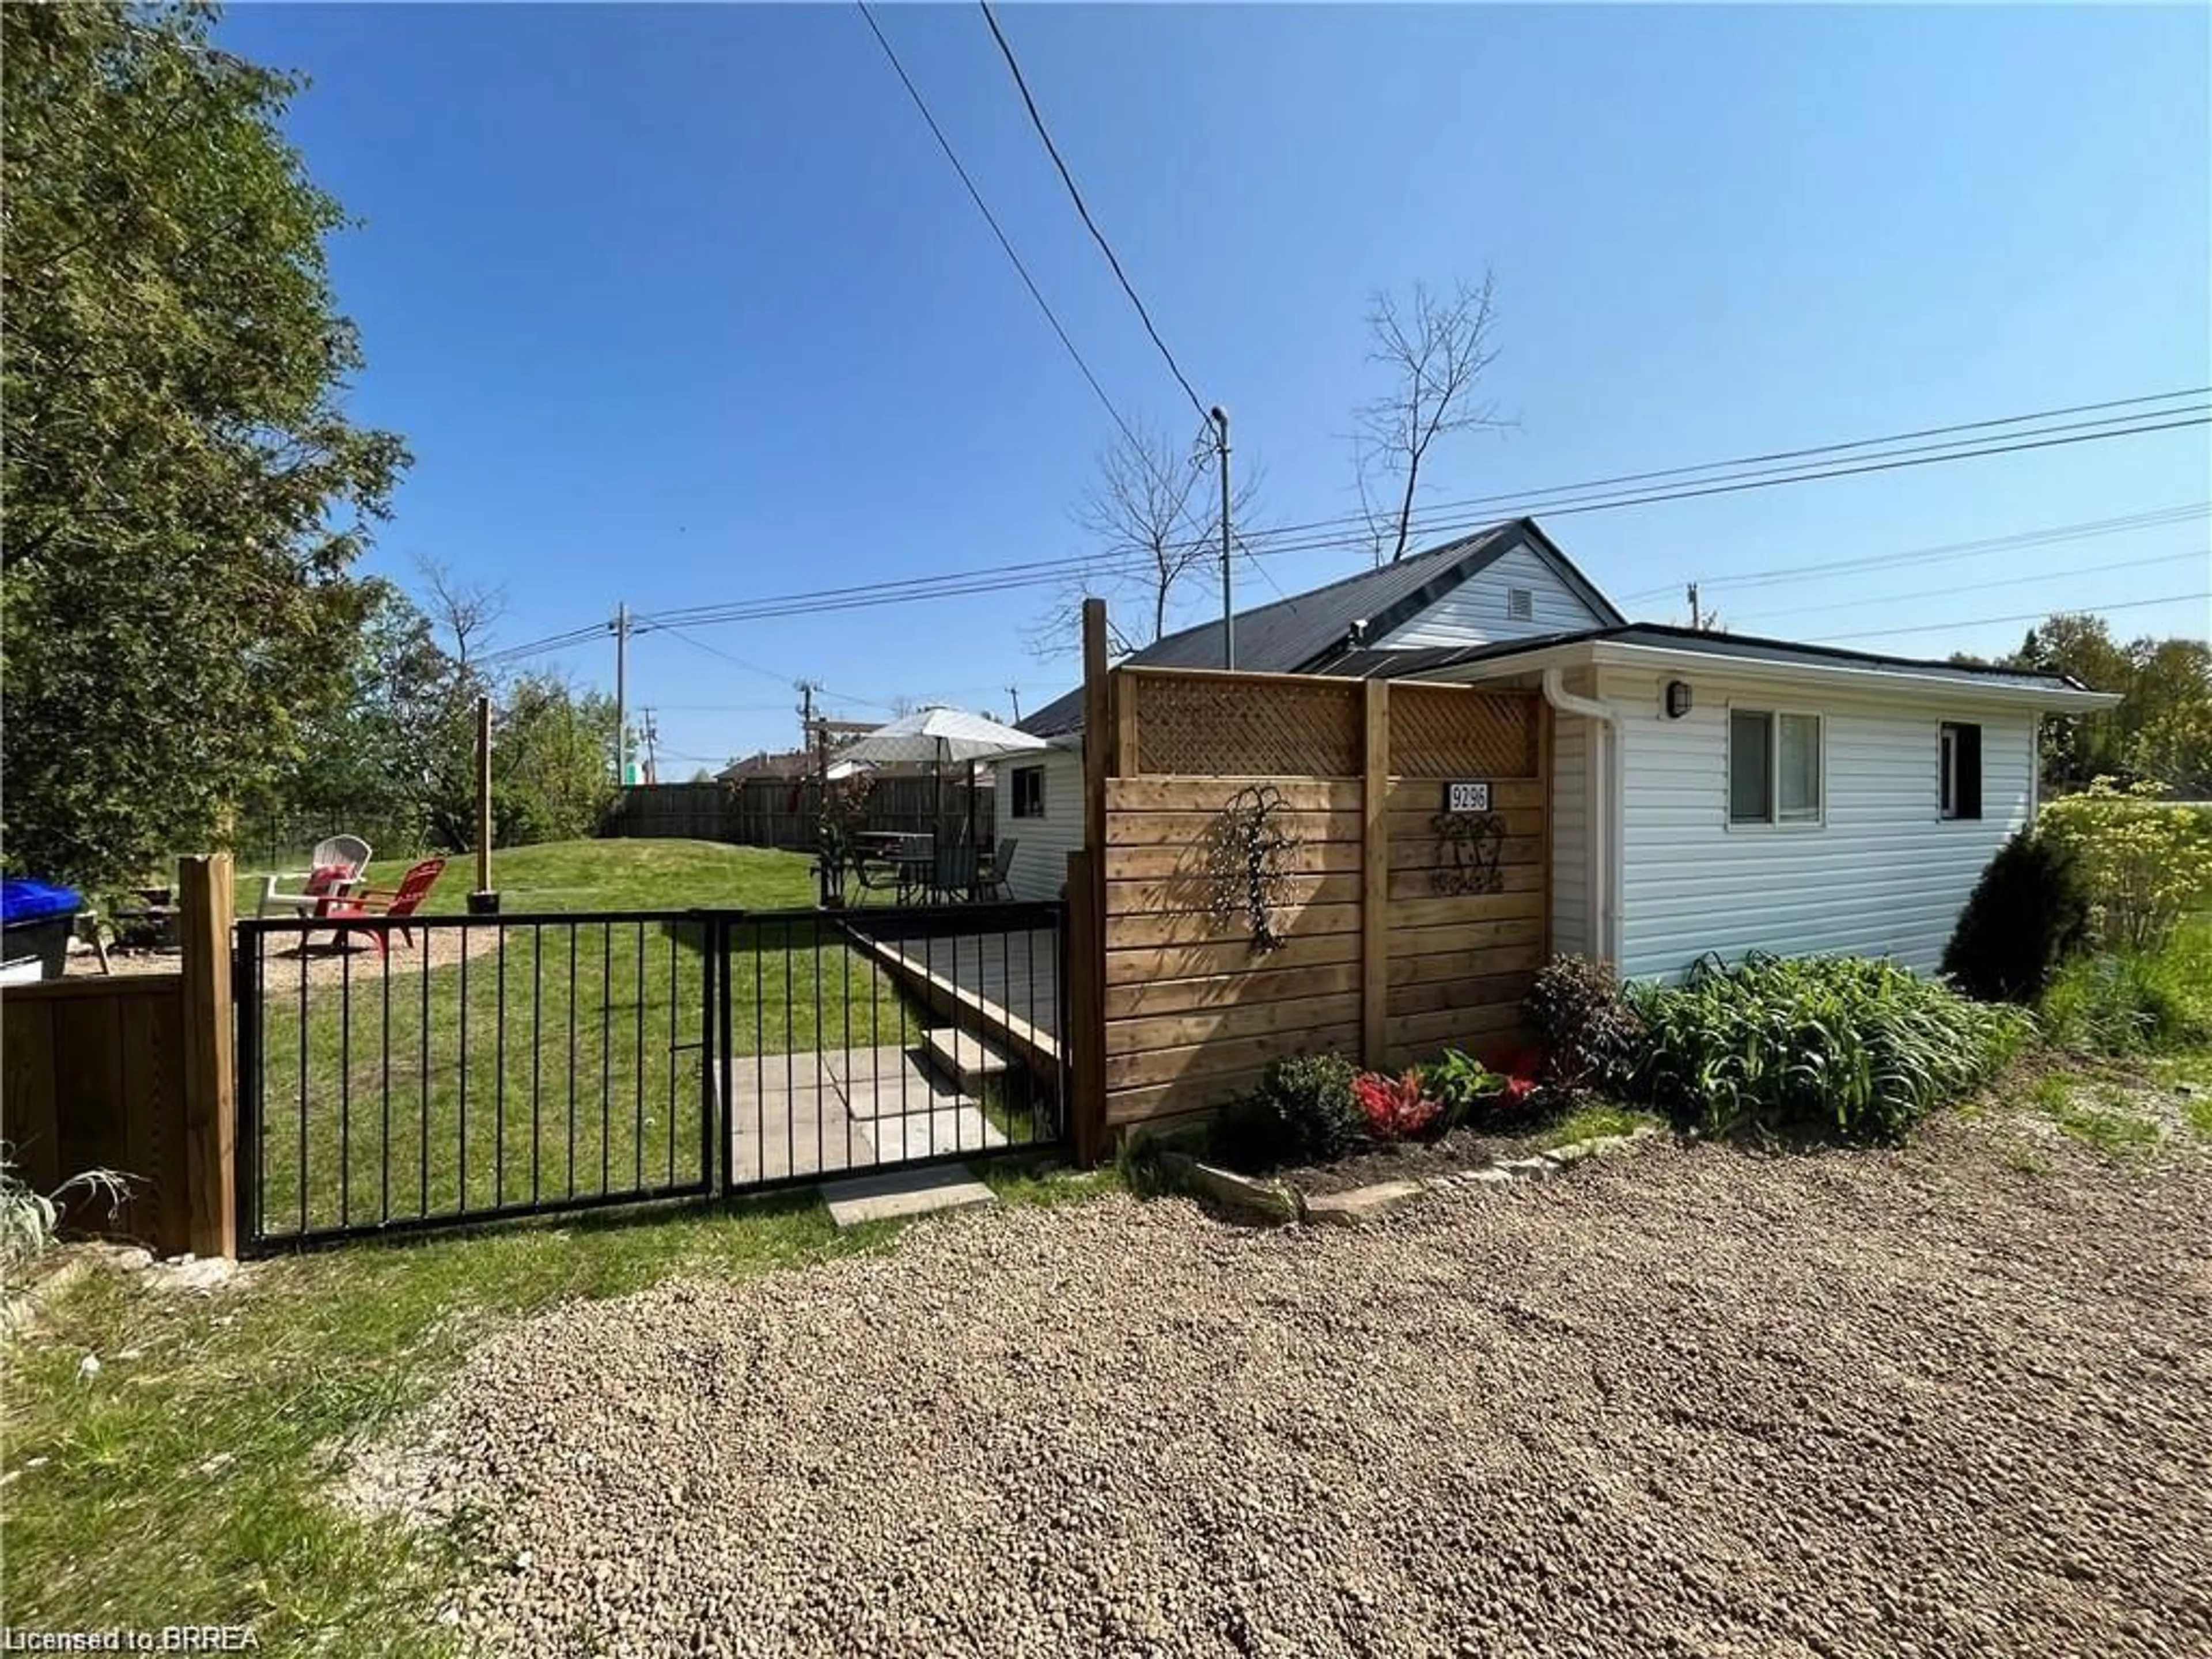 Fenced yard for 9296 Beachwood Rd, Collingwood Ontario L9Y 3Z1